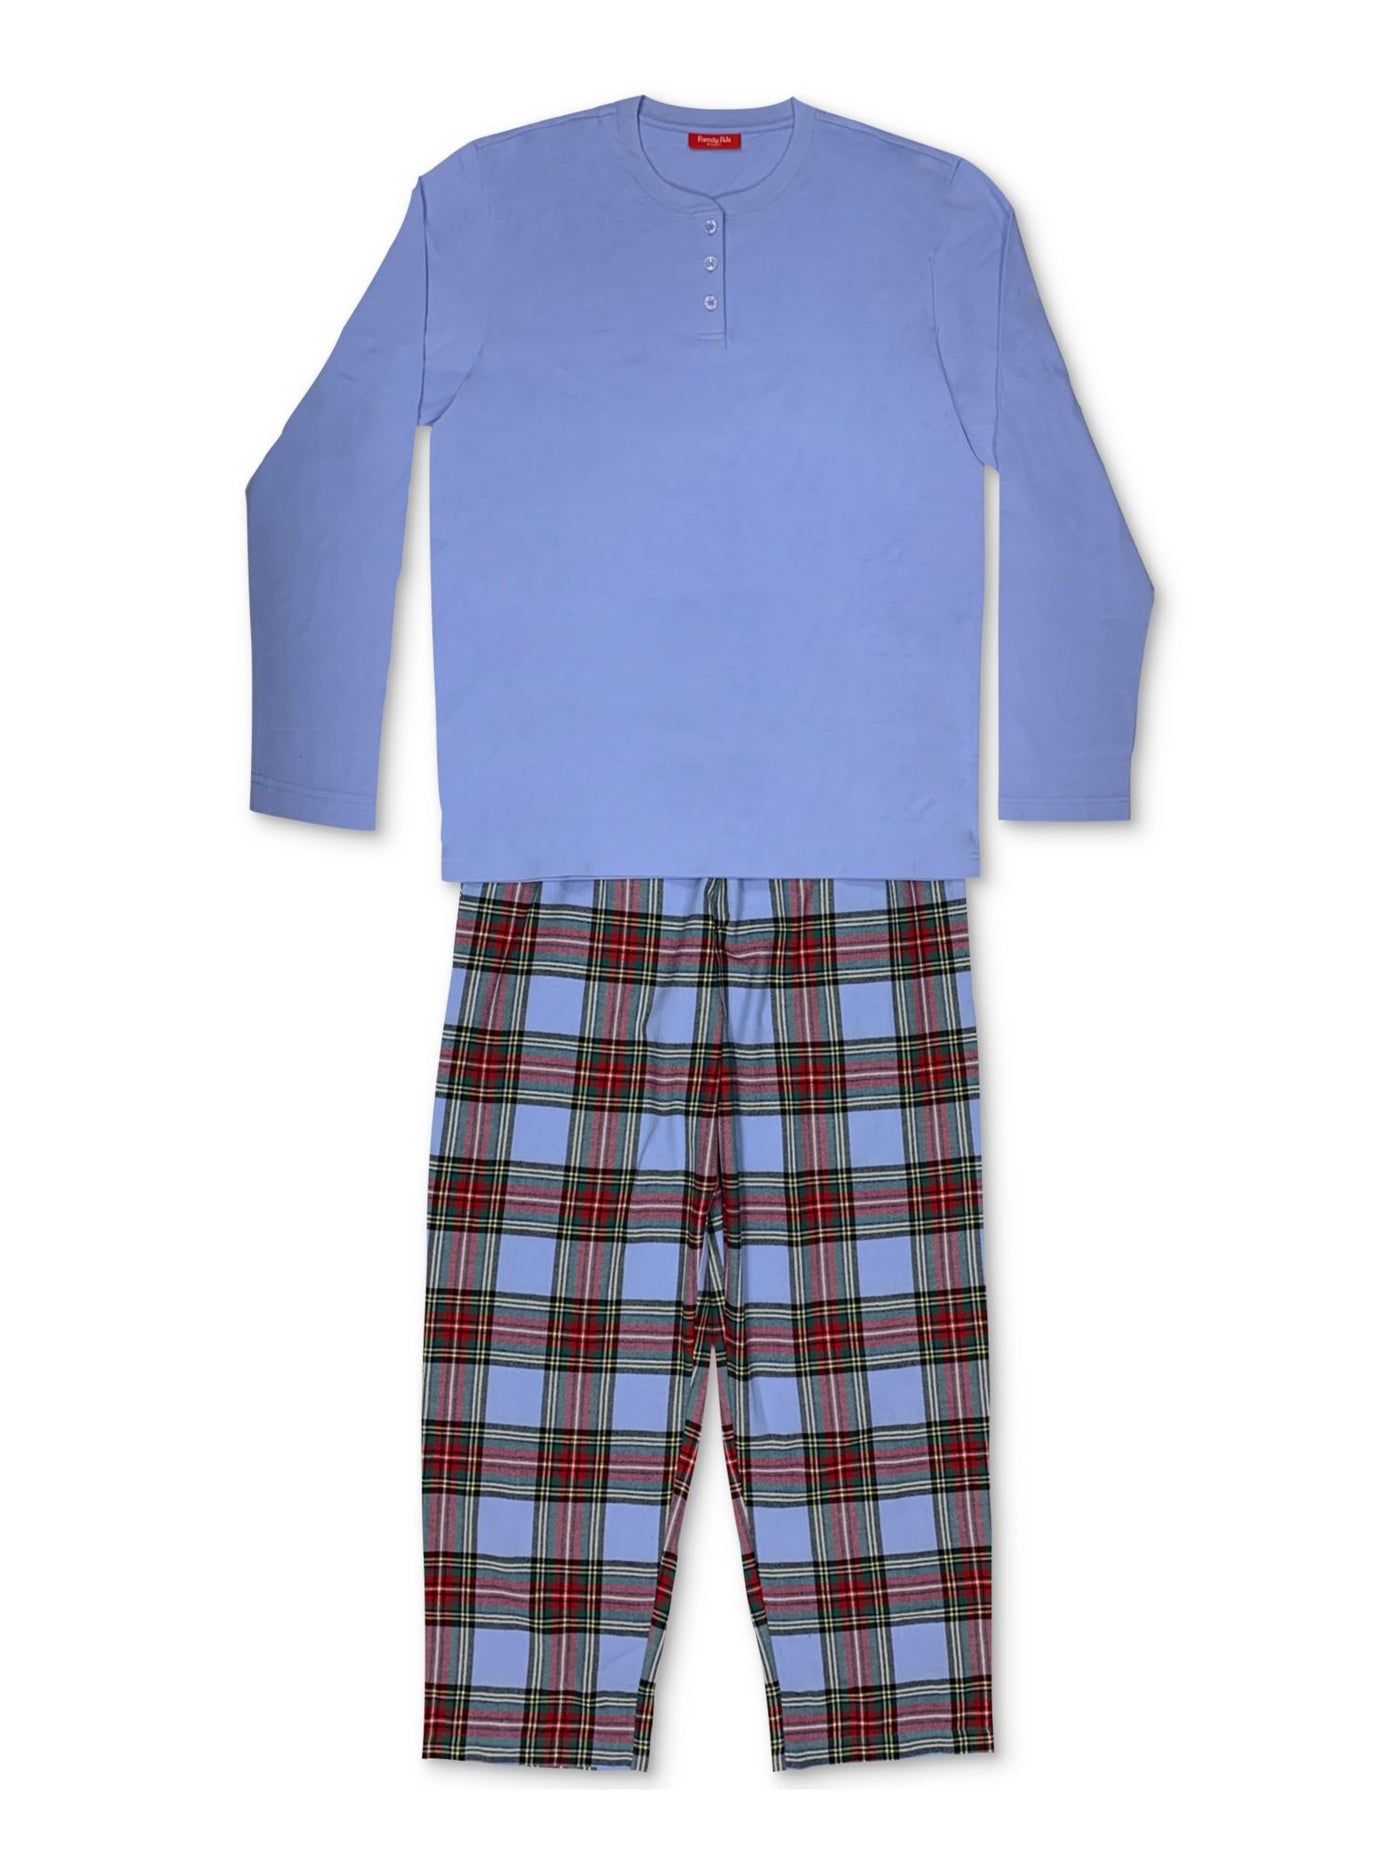 FAMILY PJs Intimates Blue Set Plaid Pajamas M